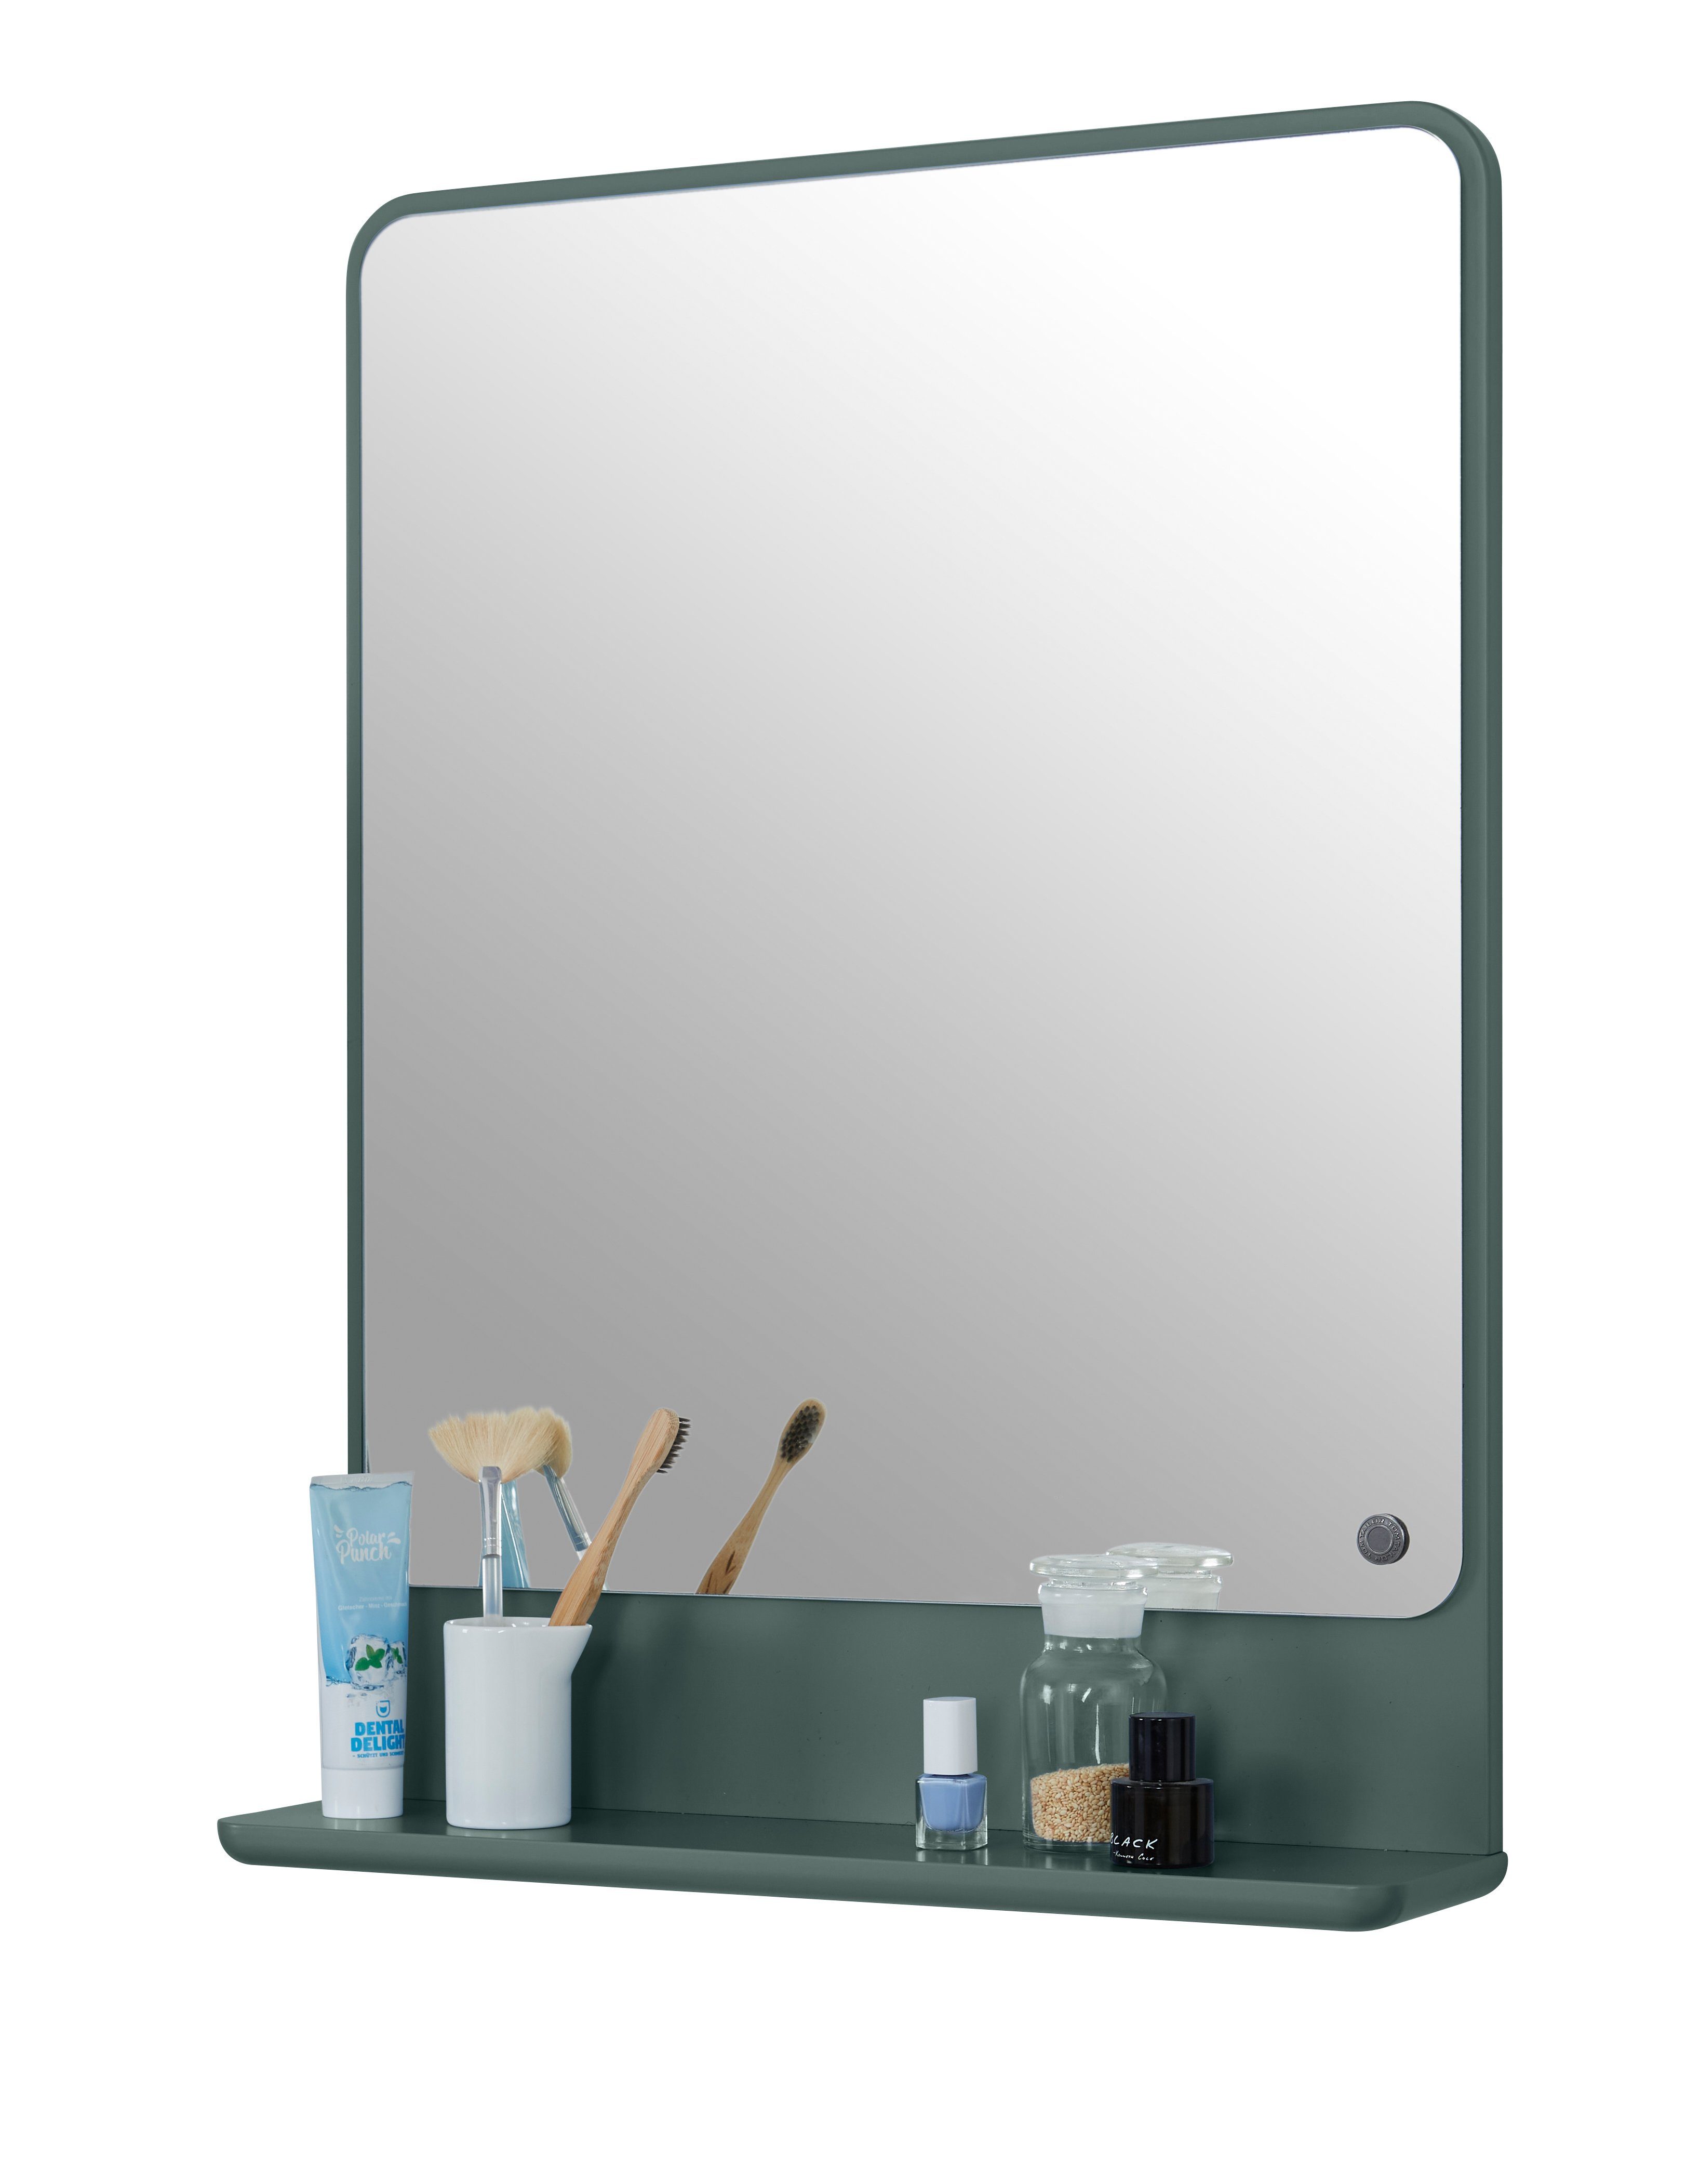 TOM TAILOR HOME Badspiegel COLOR BATH Spiegelelement - in vielen schönen Farben - 70 x 52 x 13 cm, hochwertig lackiertes MDF, gerundete Kanten forest031